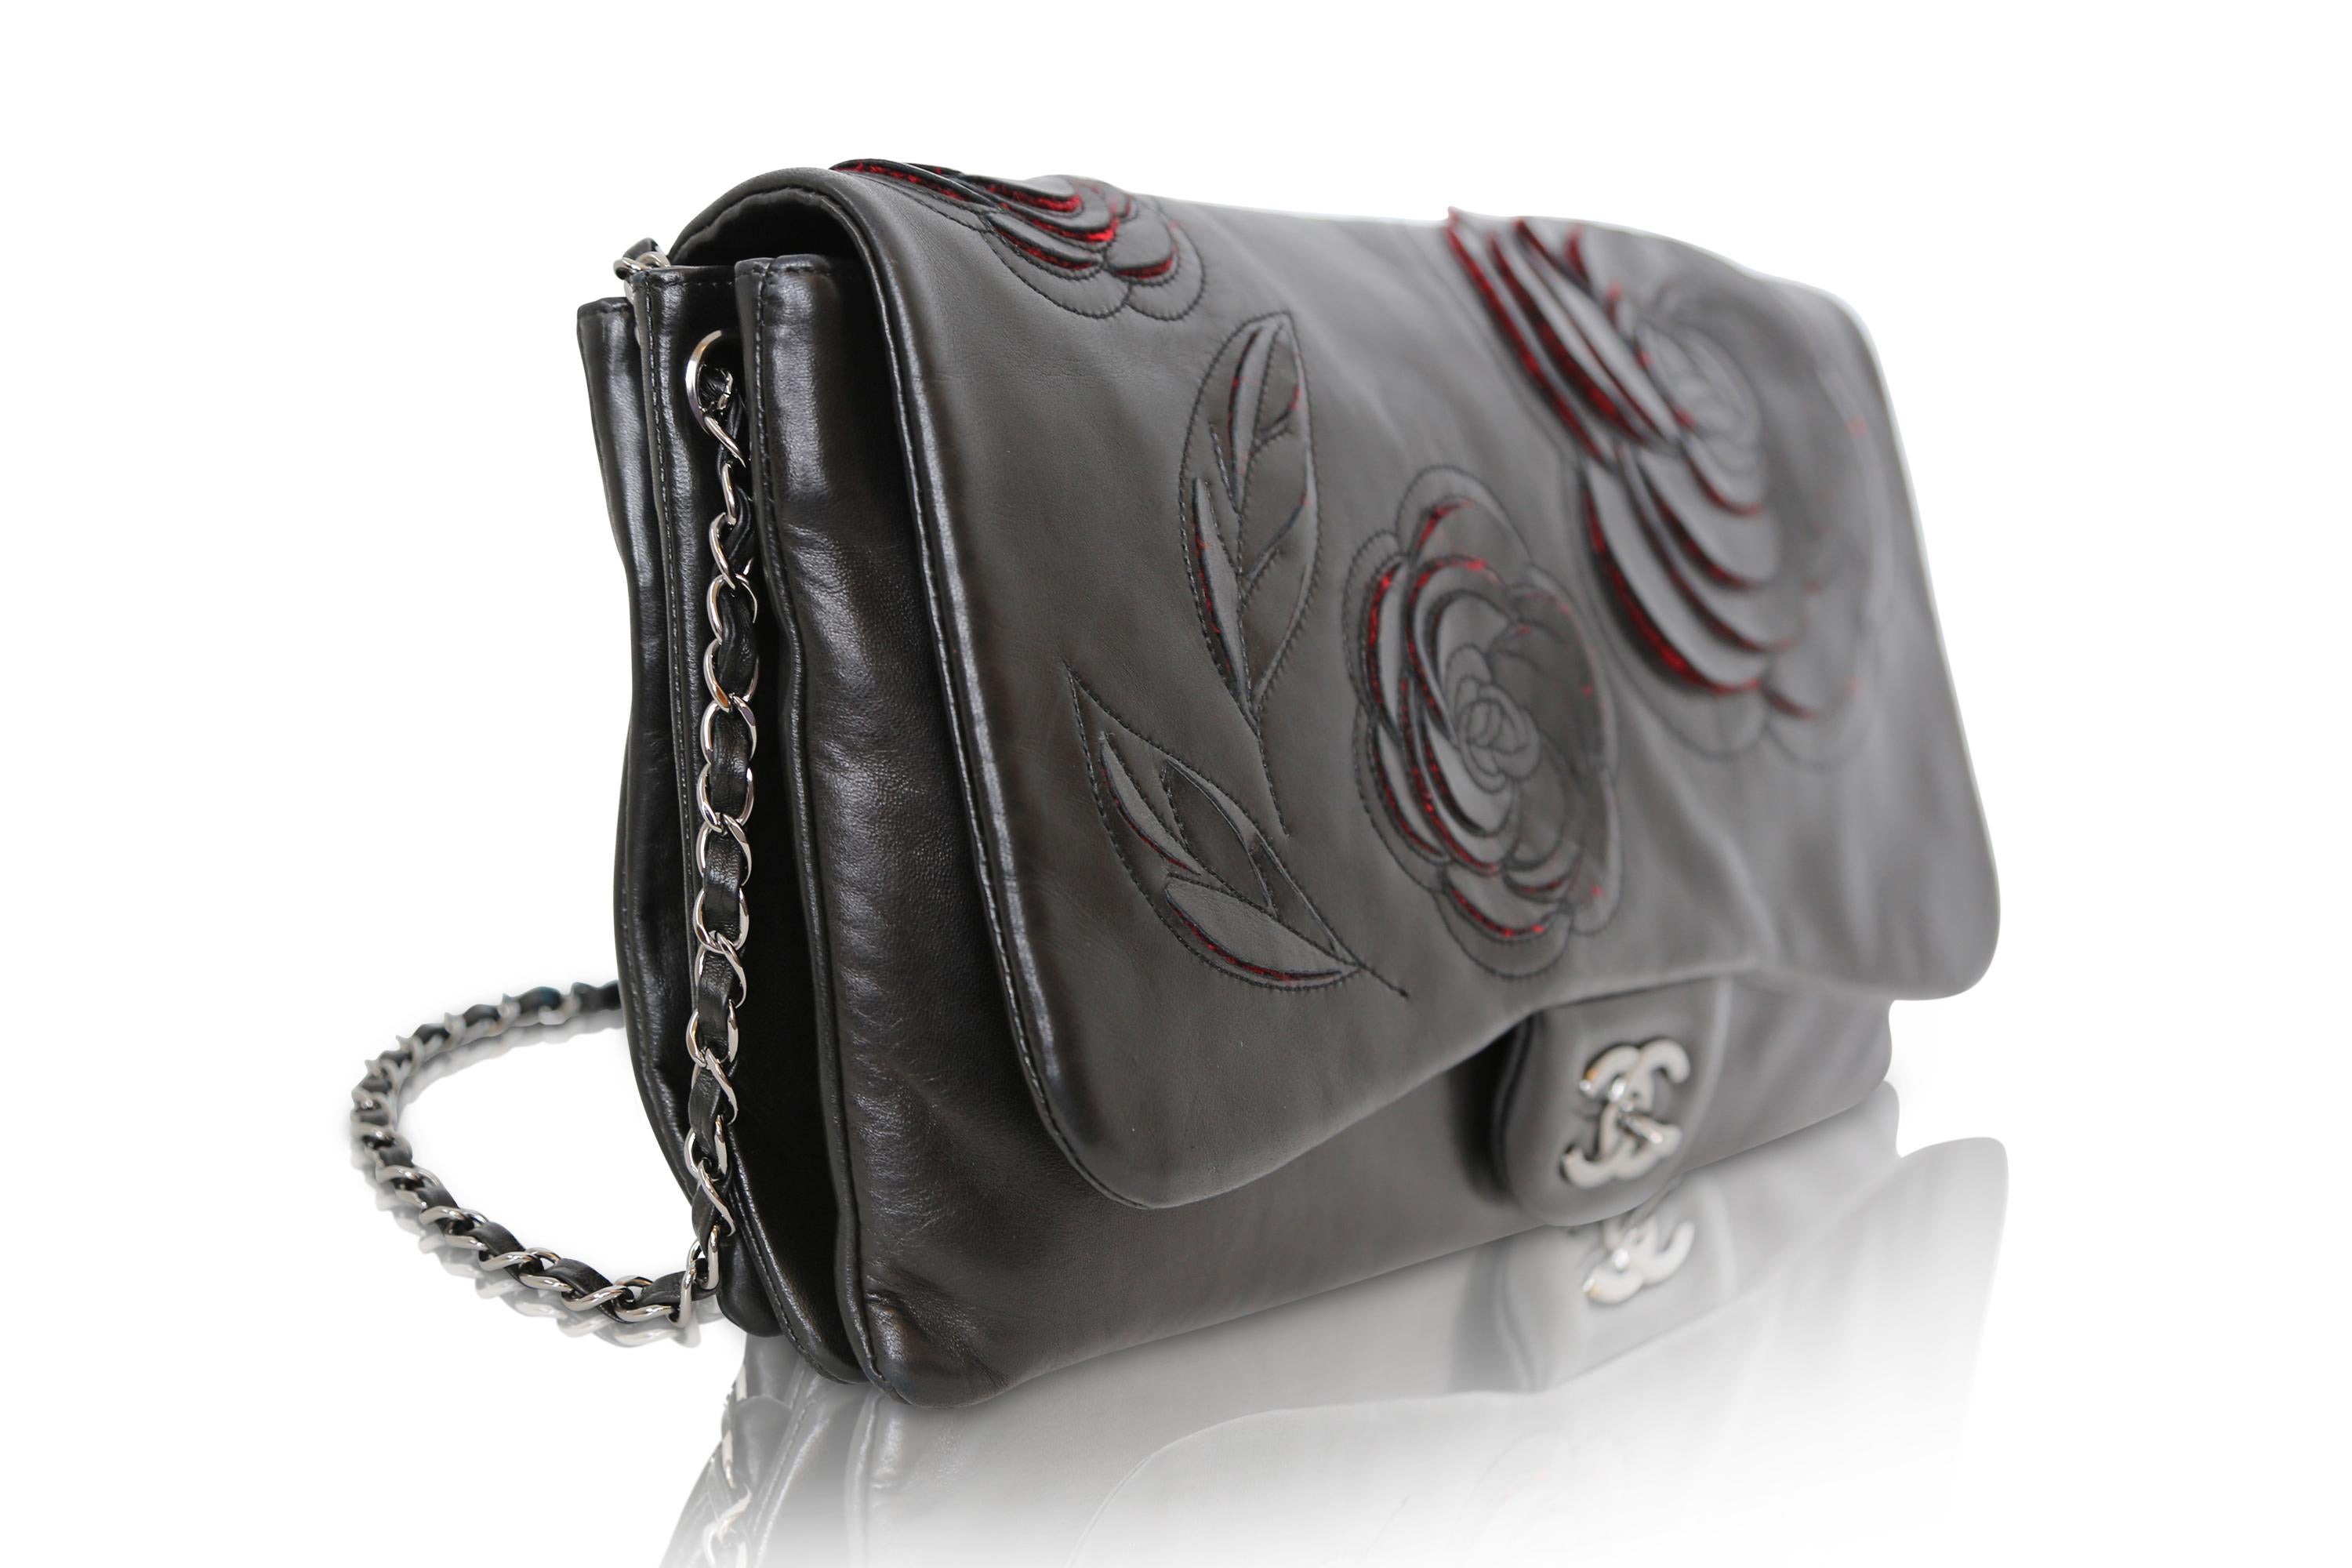 Die Camellia Runway Flap Bag ist aus dem für Chanel typischen schwarzen Lammleder gefertigt und verfügt über ein elegantes, silberfarbenes, ineinandergreifendes CC und ein leuchtend rotes Innenfach aus Stoff mit mehreren praktischen Fächern. Der